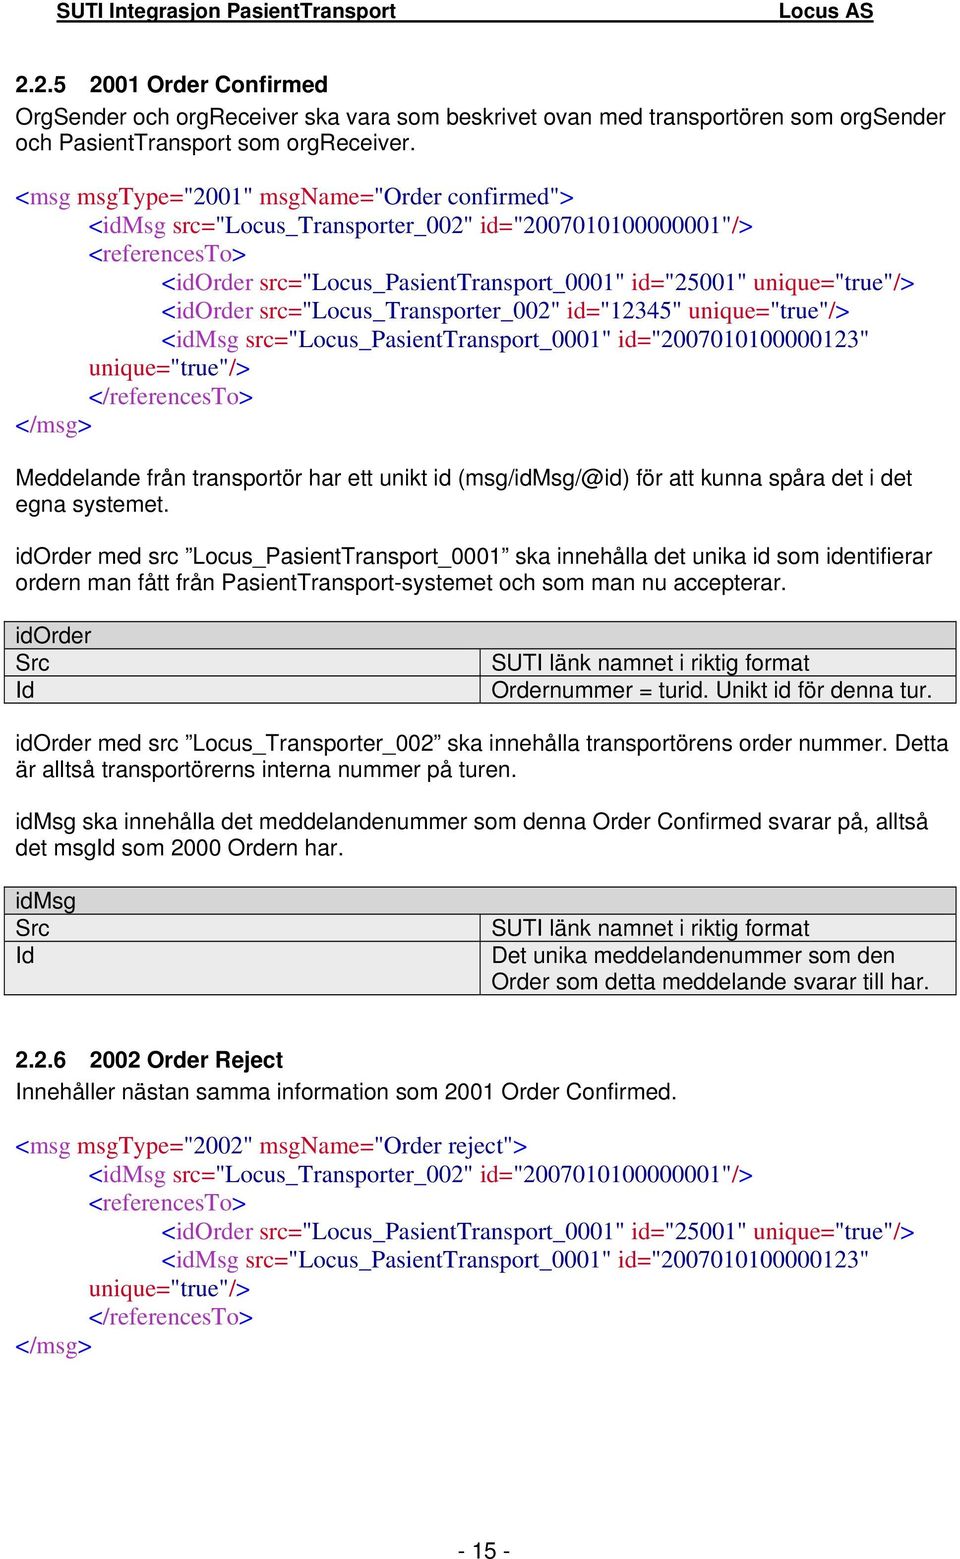 src="locus_transporter_002" id="12345" unique="true"/> <idmsg src="locus_pasienttransport_0001" id="2007010100000123" unique="true"/> Meddelande från transportör har ett unikt id (msg/idmsg/@id) för